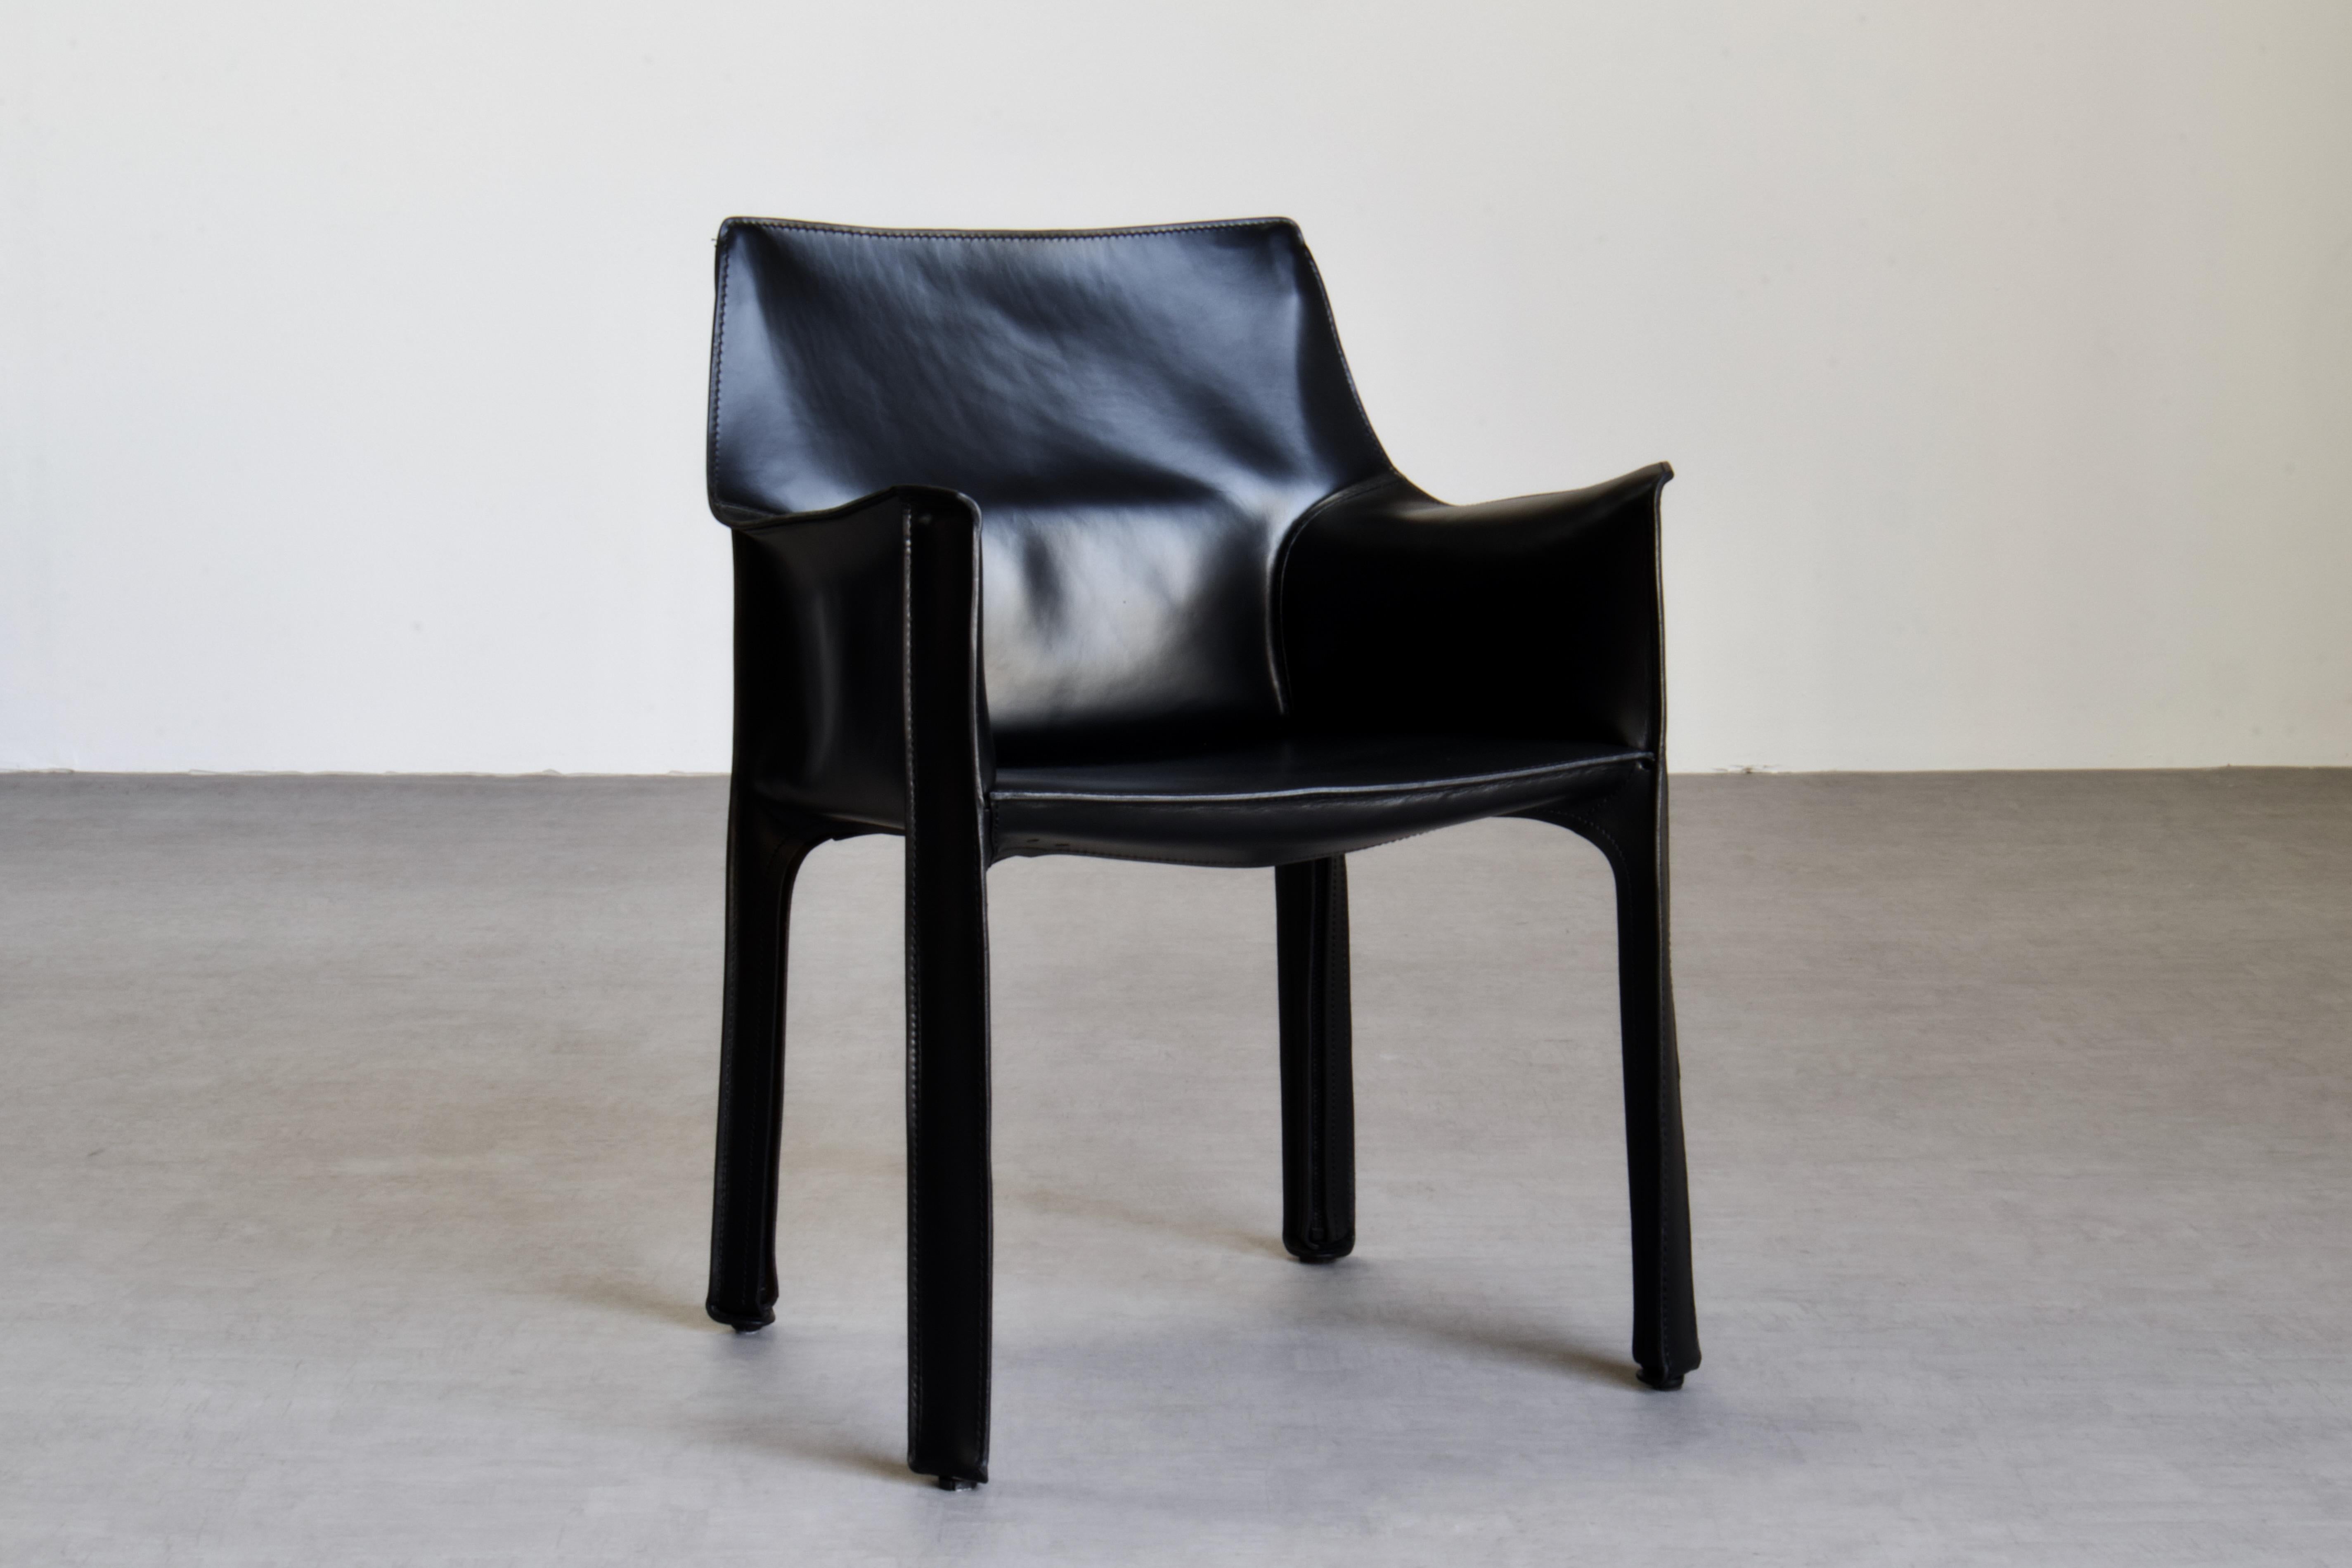 Lot de 10 chaises Mario Bellini CAB 413, fabriquées par Cassina. Cadre en acier flexible recouvert d'une peau en cuir de selle noir vintage de haute qualité. 

Les chaises, qui étaient déjà en très bon état, ont été entièrement rafraîchies par notre